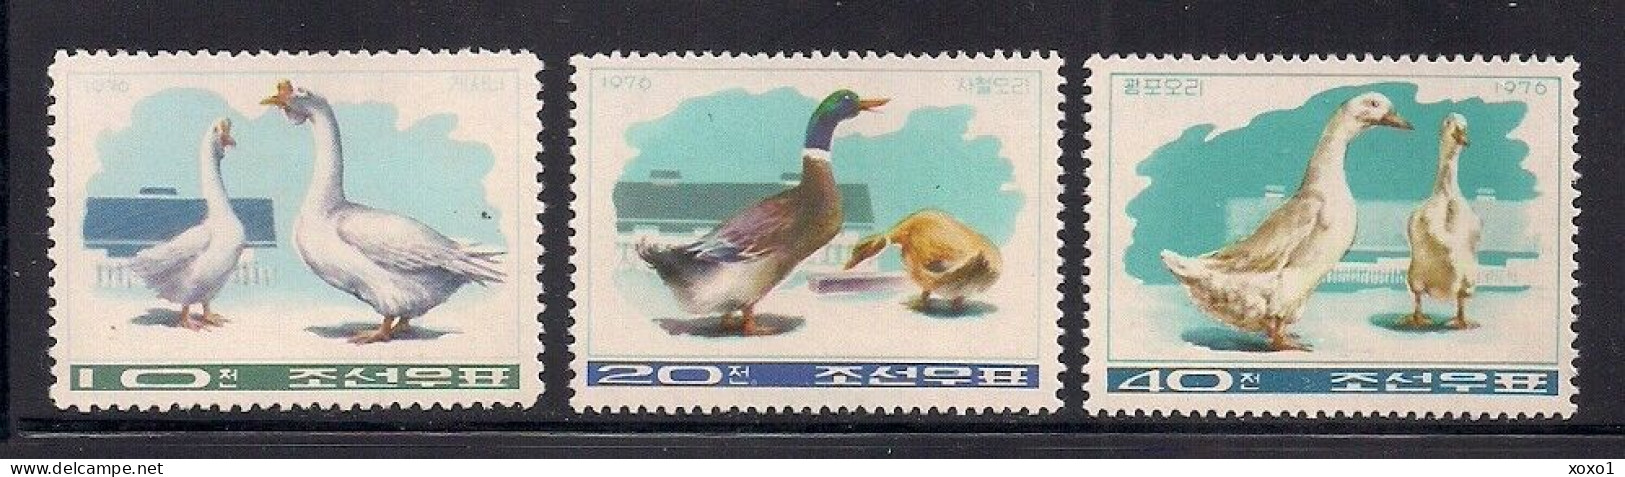 Korea, North 1976 MiNr. 1467 - 1469 Korea-Nord  Vögel Birds Farm  3v  MNH ** 7.00 € - Gänsevögel